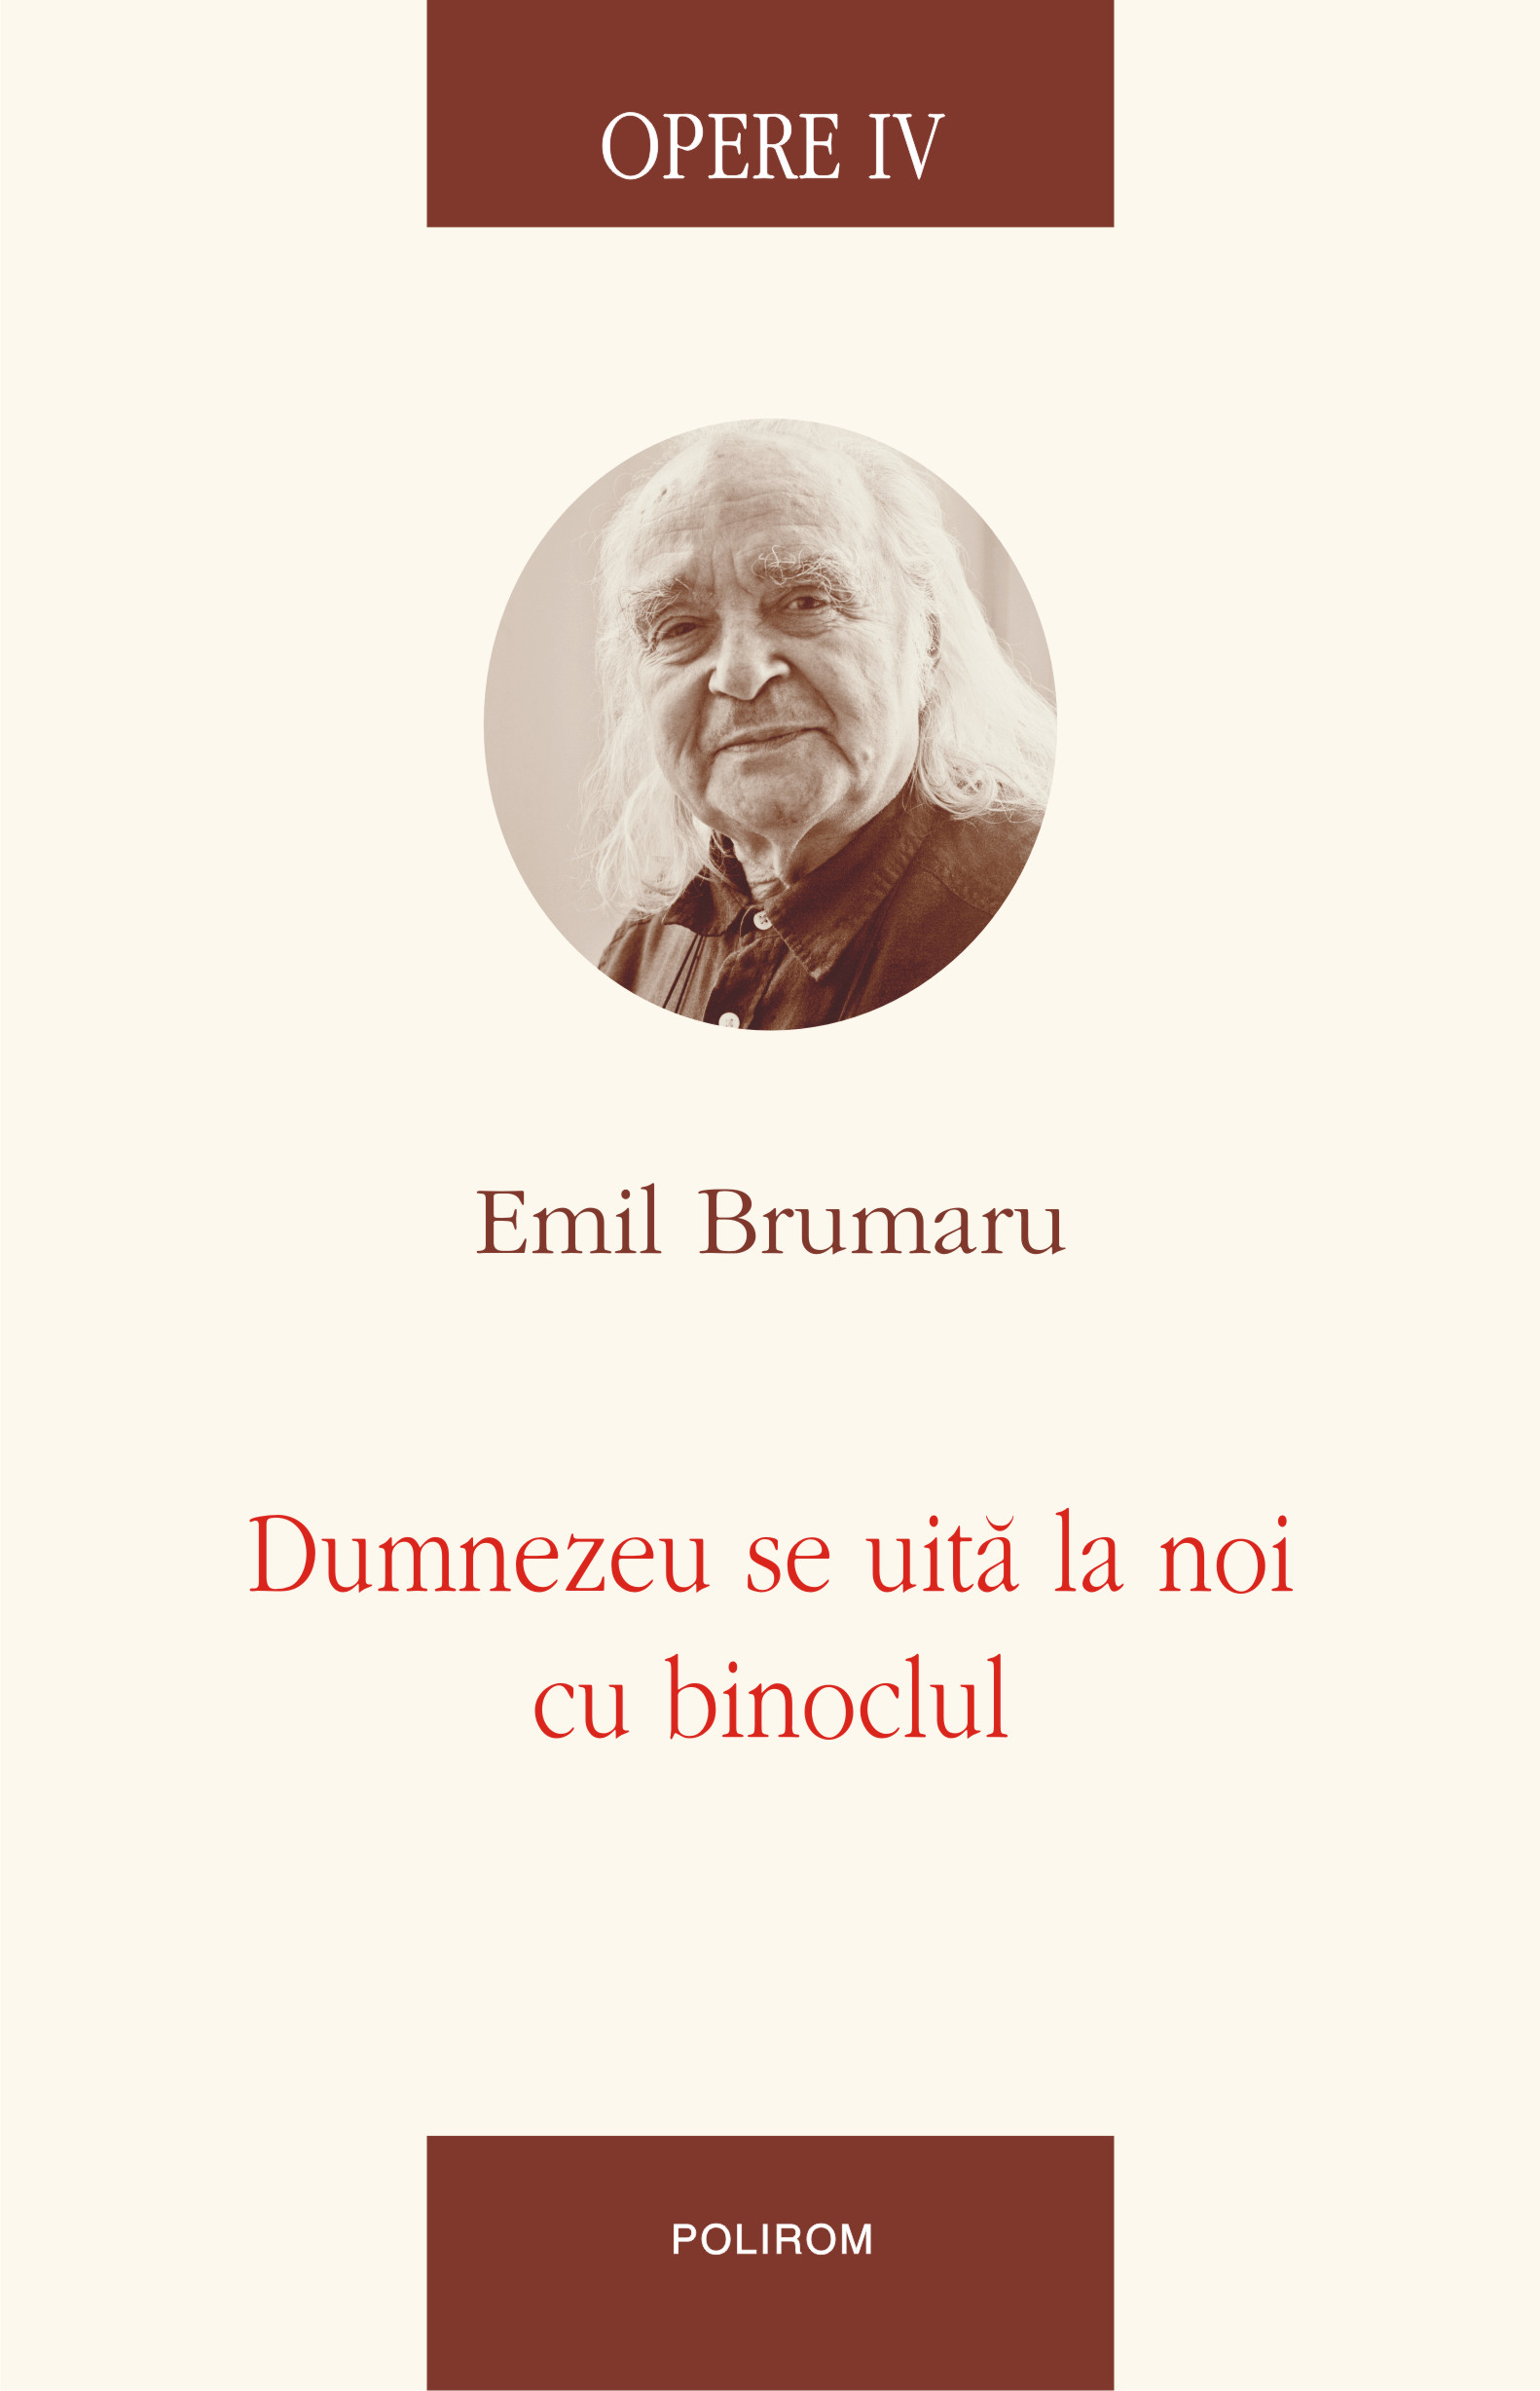 eBook Opere IV Dumnezeu se uita la noi cu binoclul - Emil Brumaru